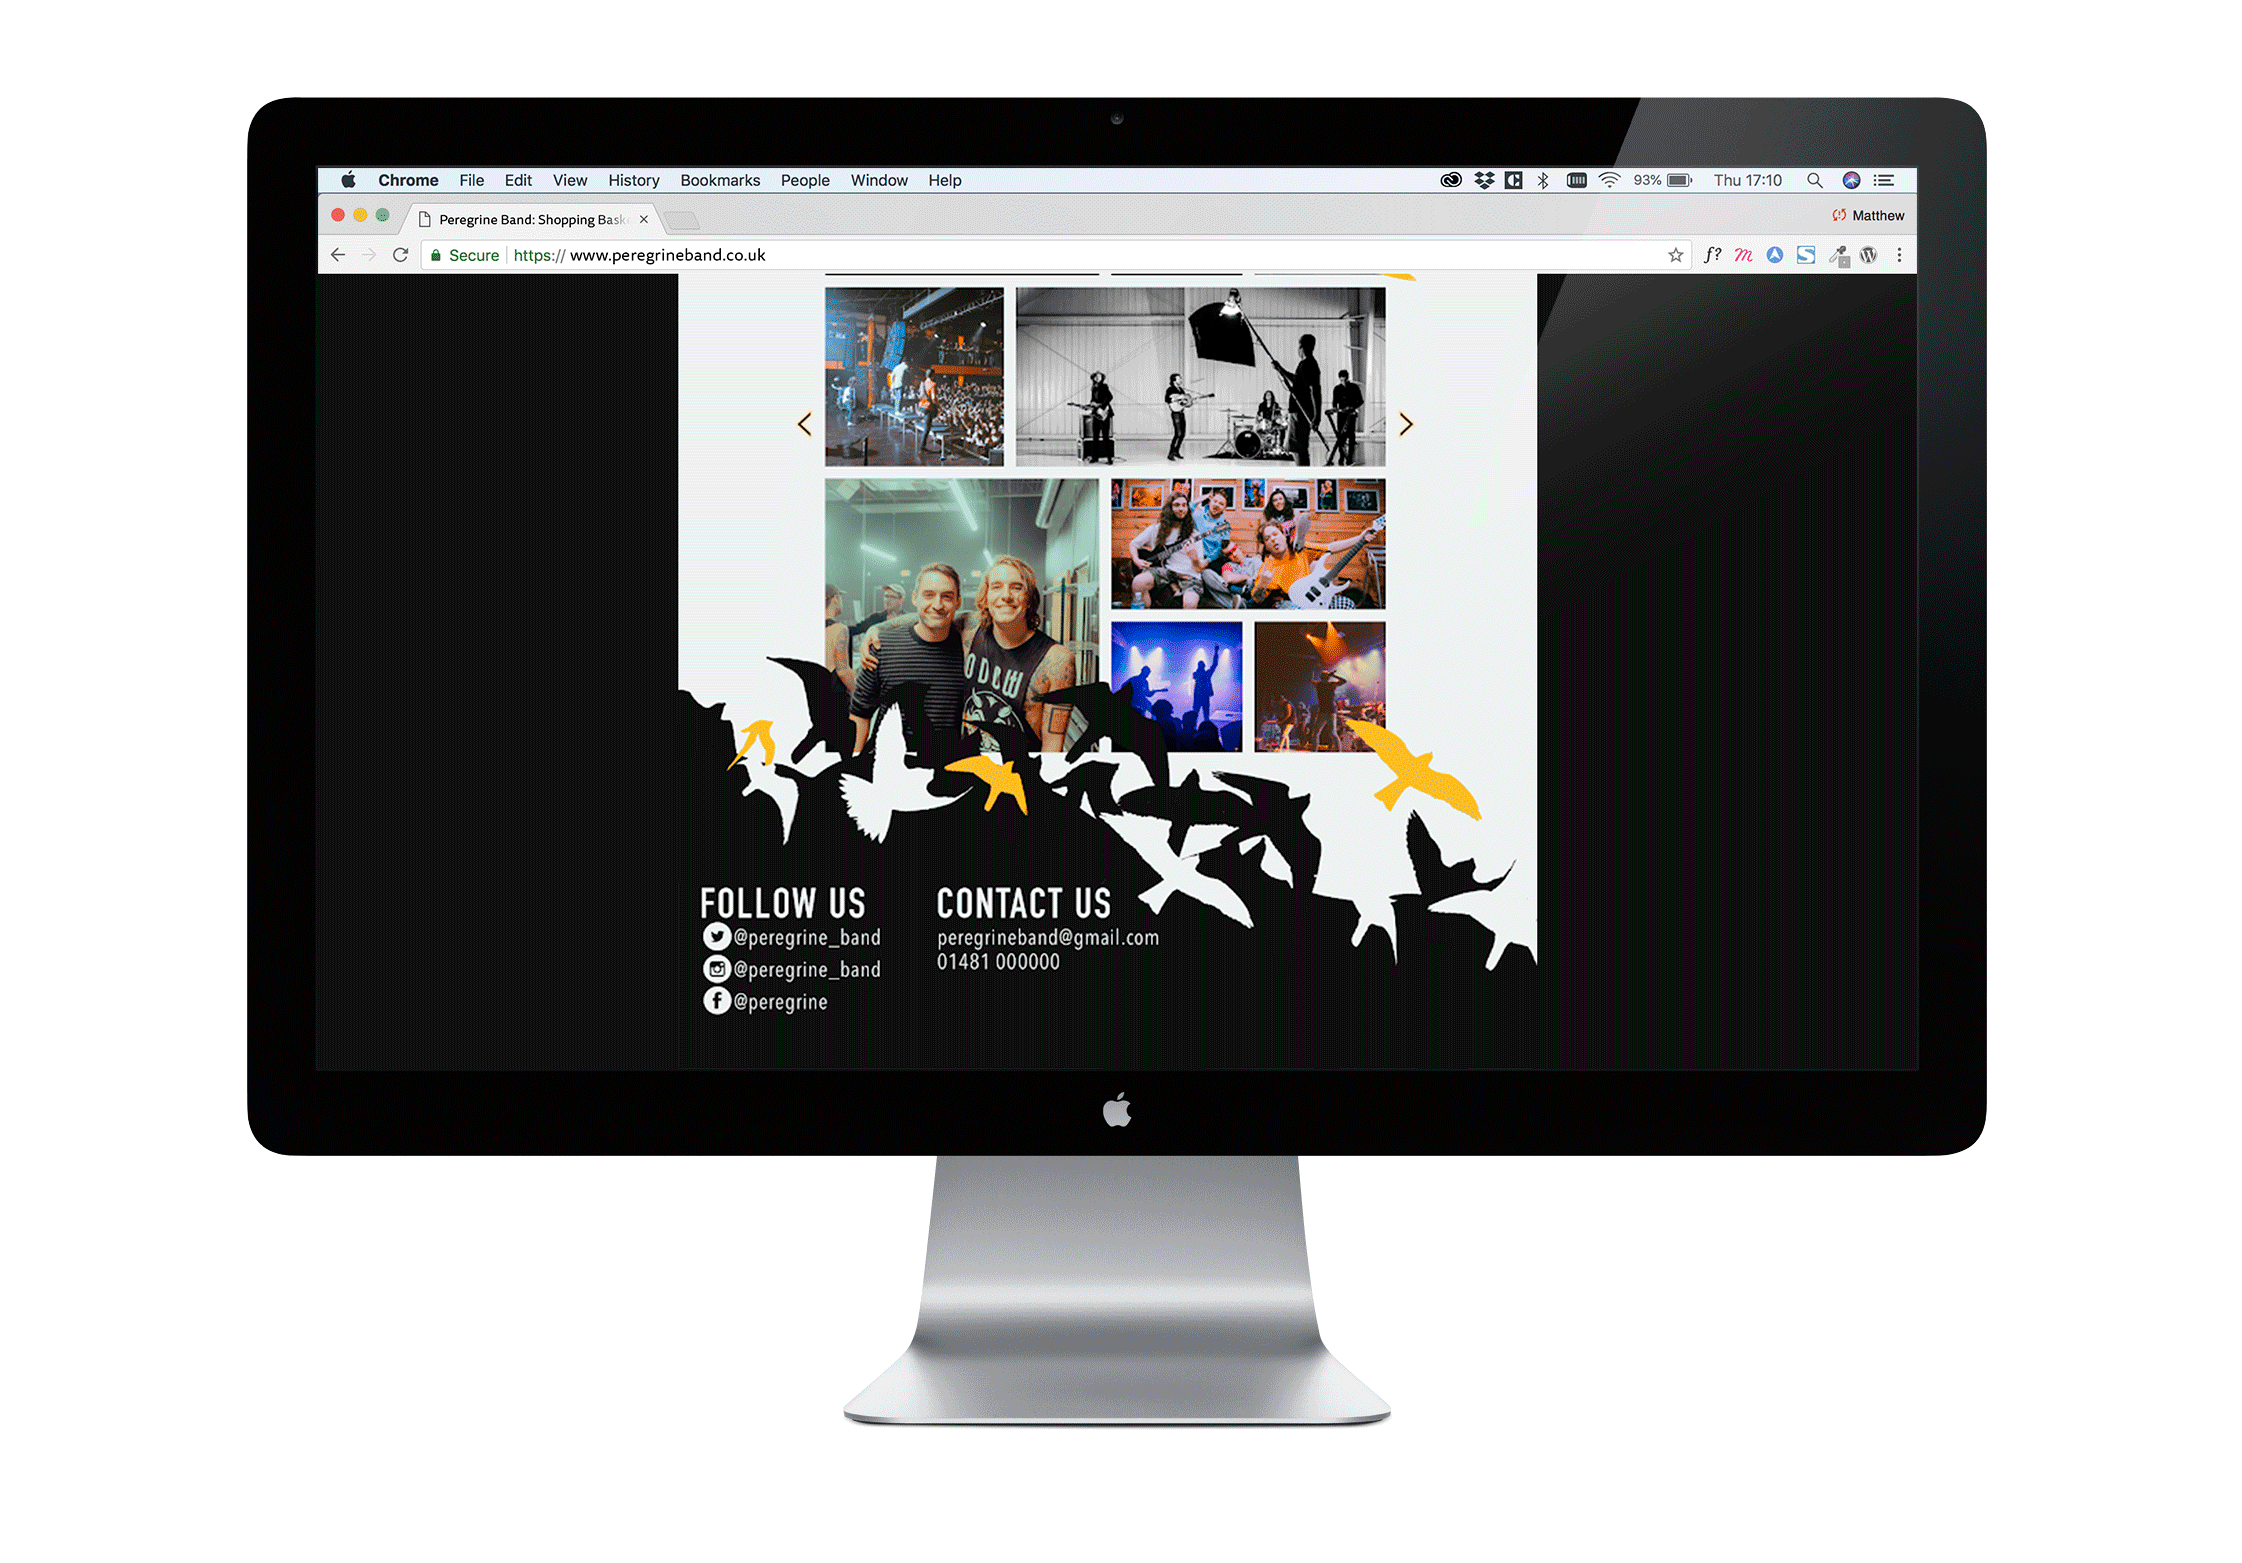 Website store desktop design image gallery